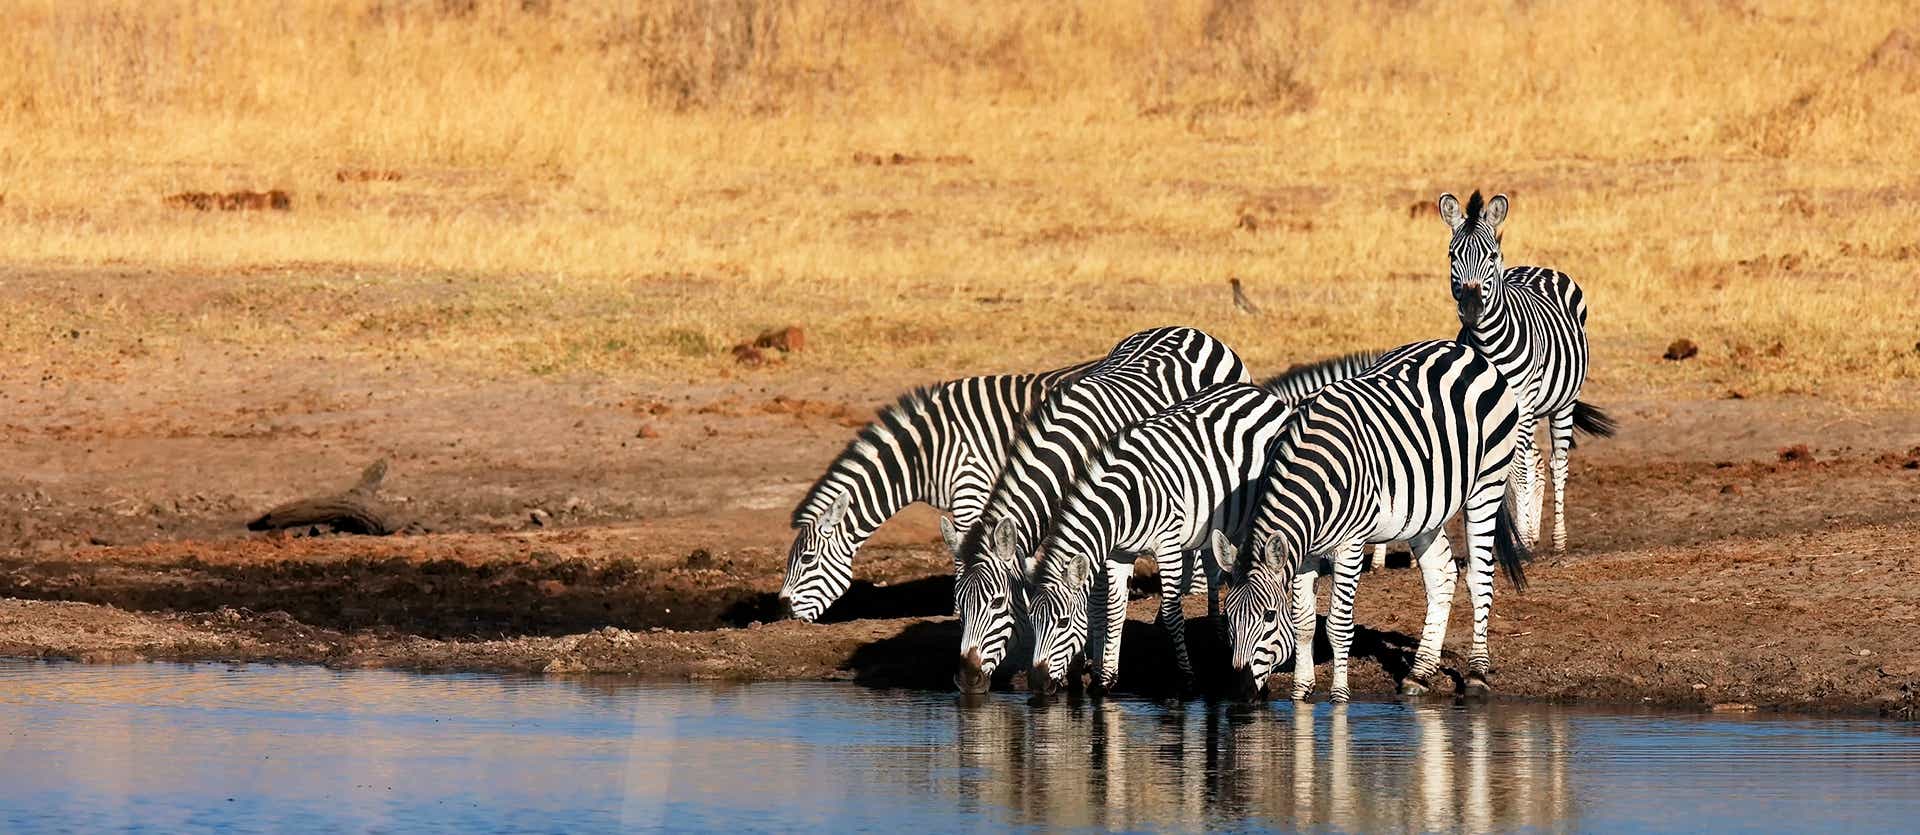 Zèbres sauvages <span class="iconos separador"></span> Parc national Kruger